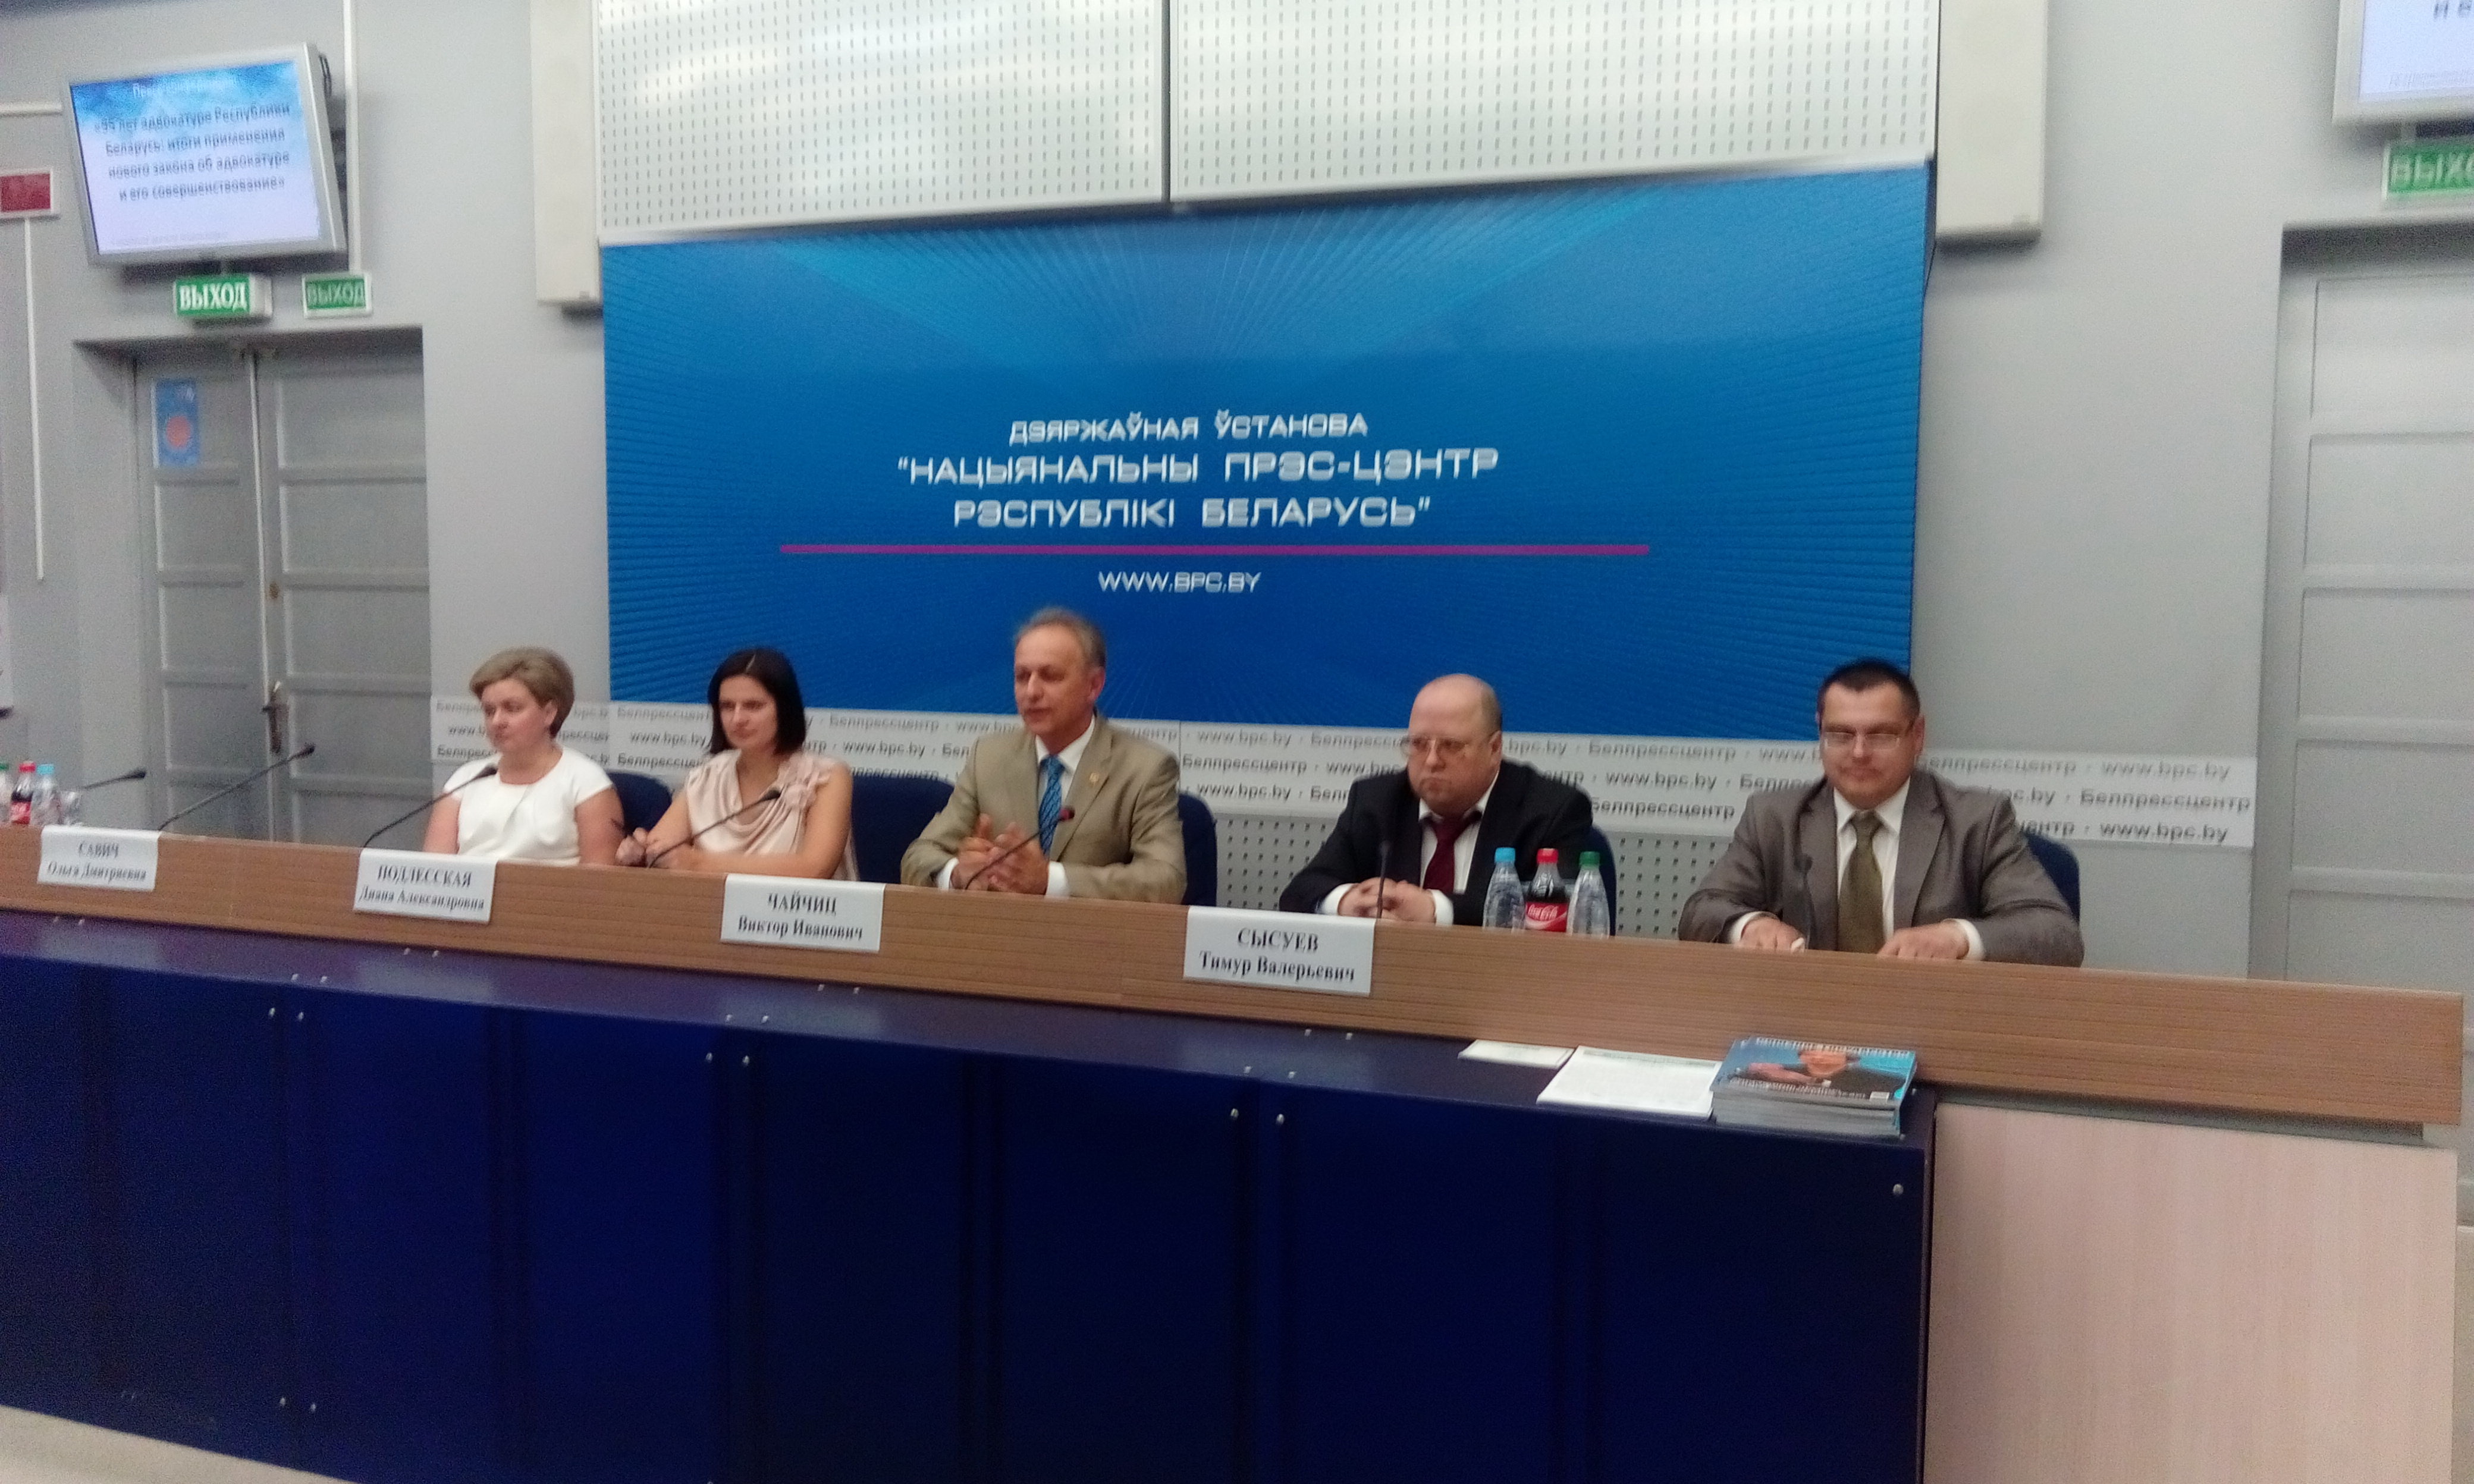 Пресс-конференция, посвященная юбилею адвокатуры,   состоялась в Национальном пресс-центре Республики Беларусь